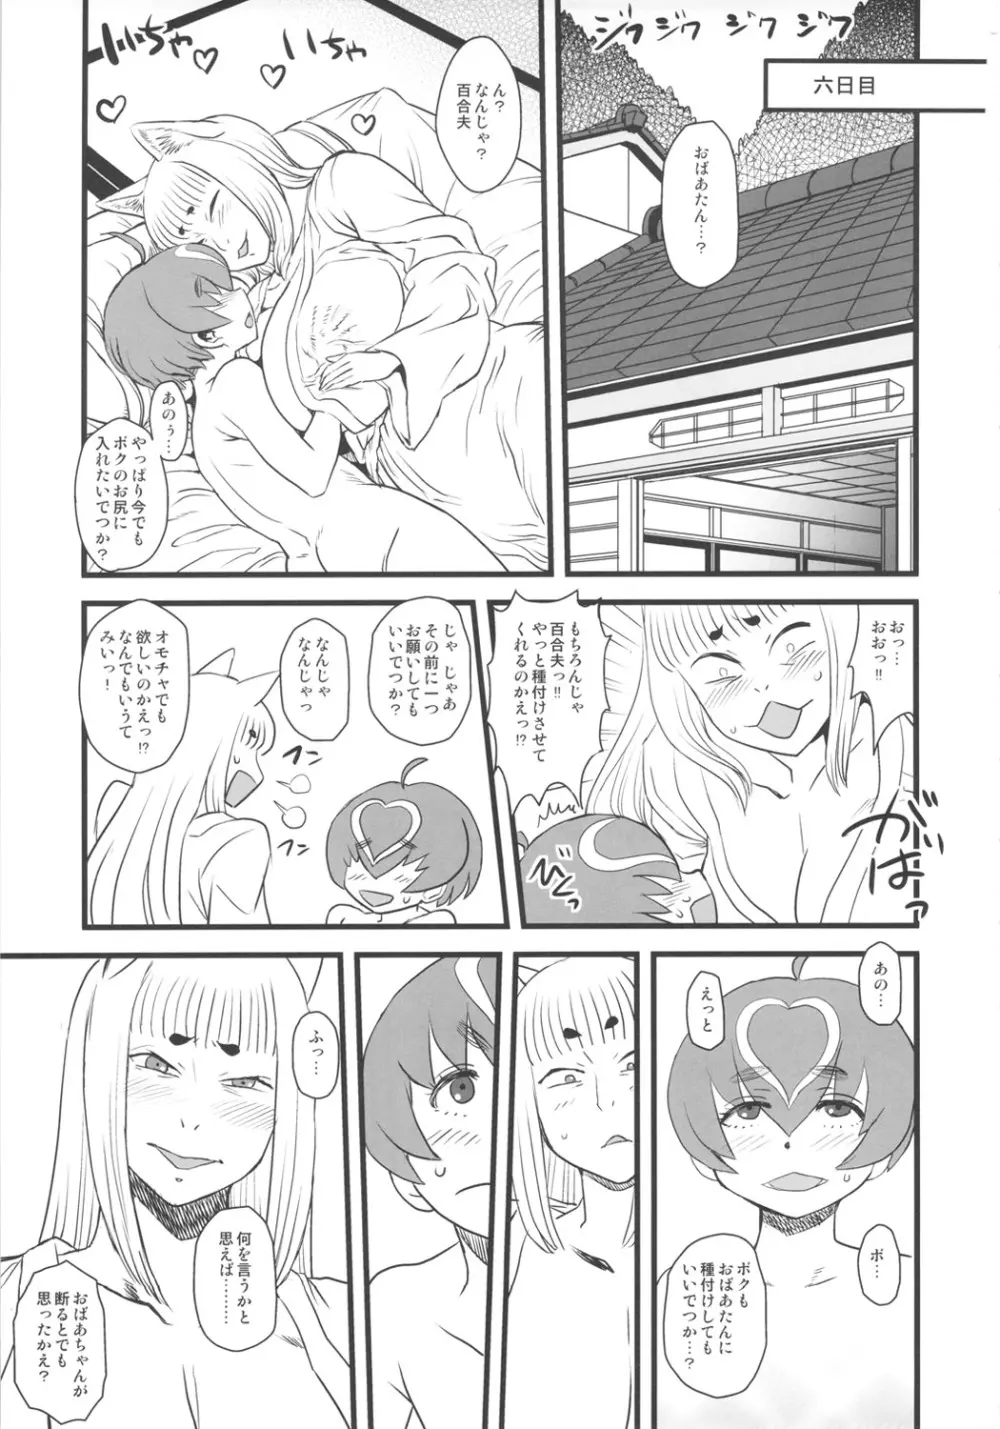 8月の黄金週間 おばあちゃんと遊ぼう! - page42